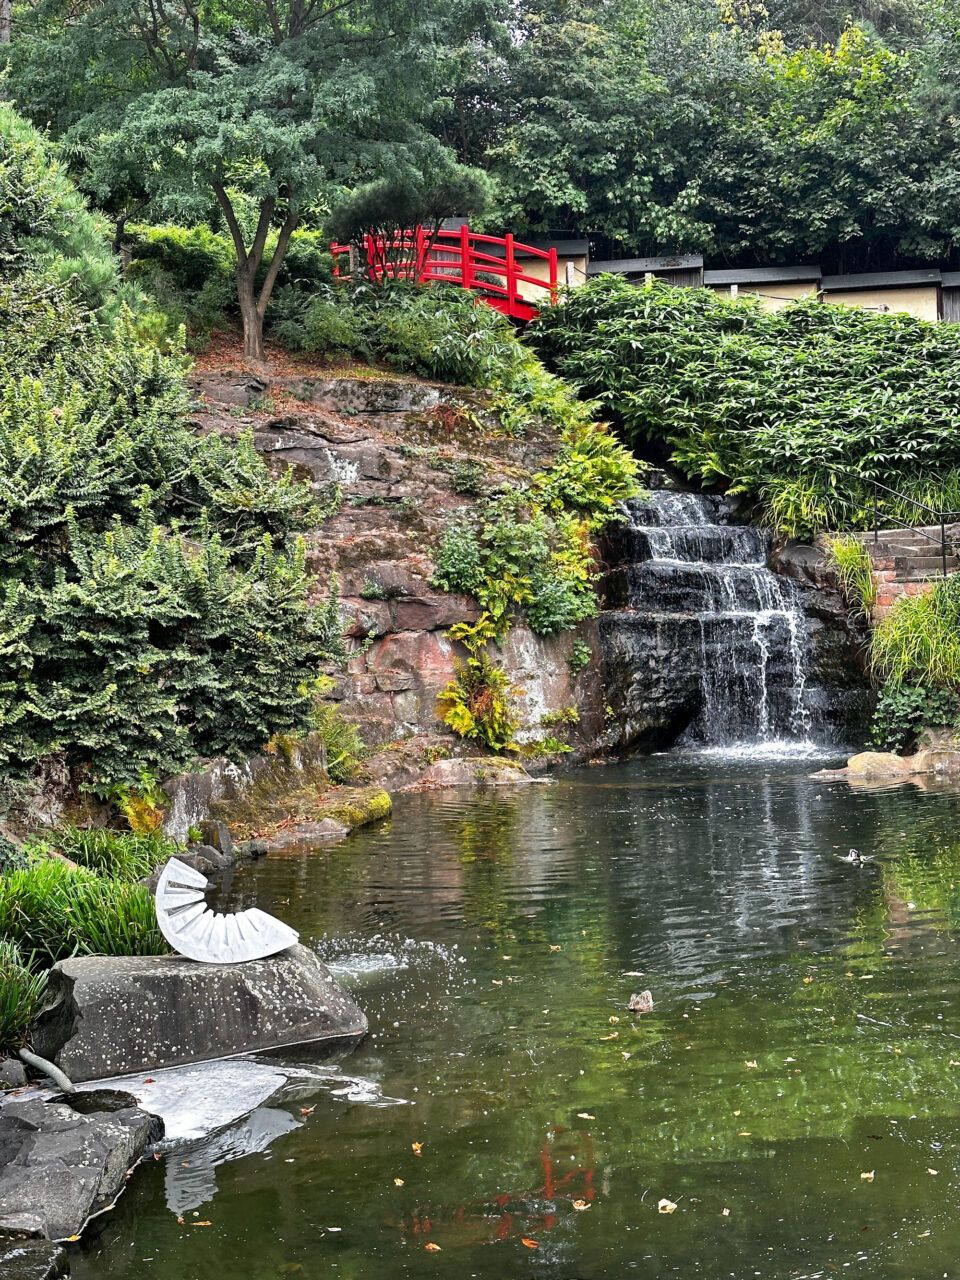 A beautiful red bridge high above the koi pond at the Japanischer Garten.